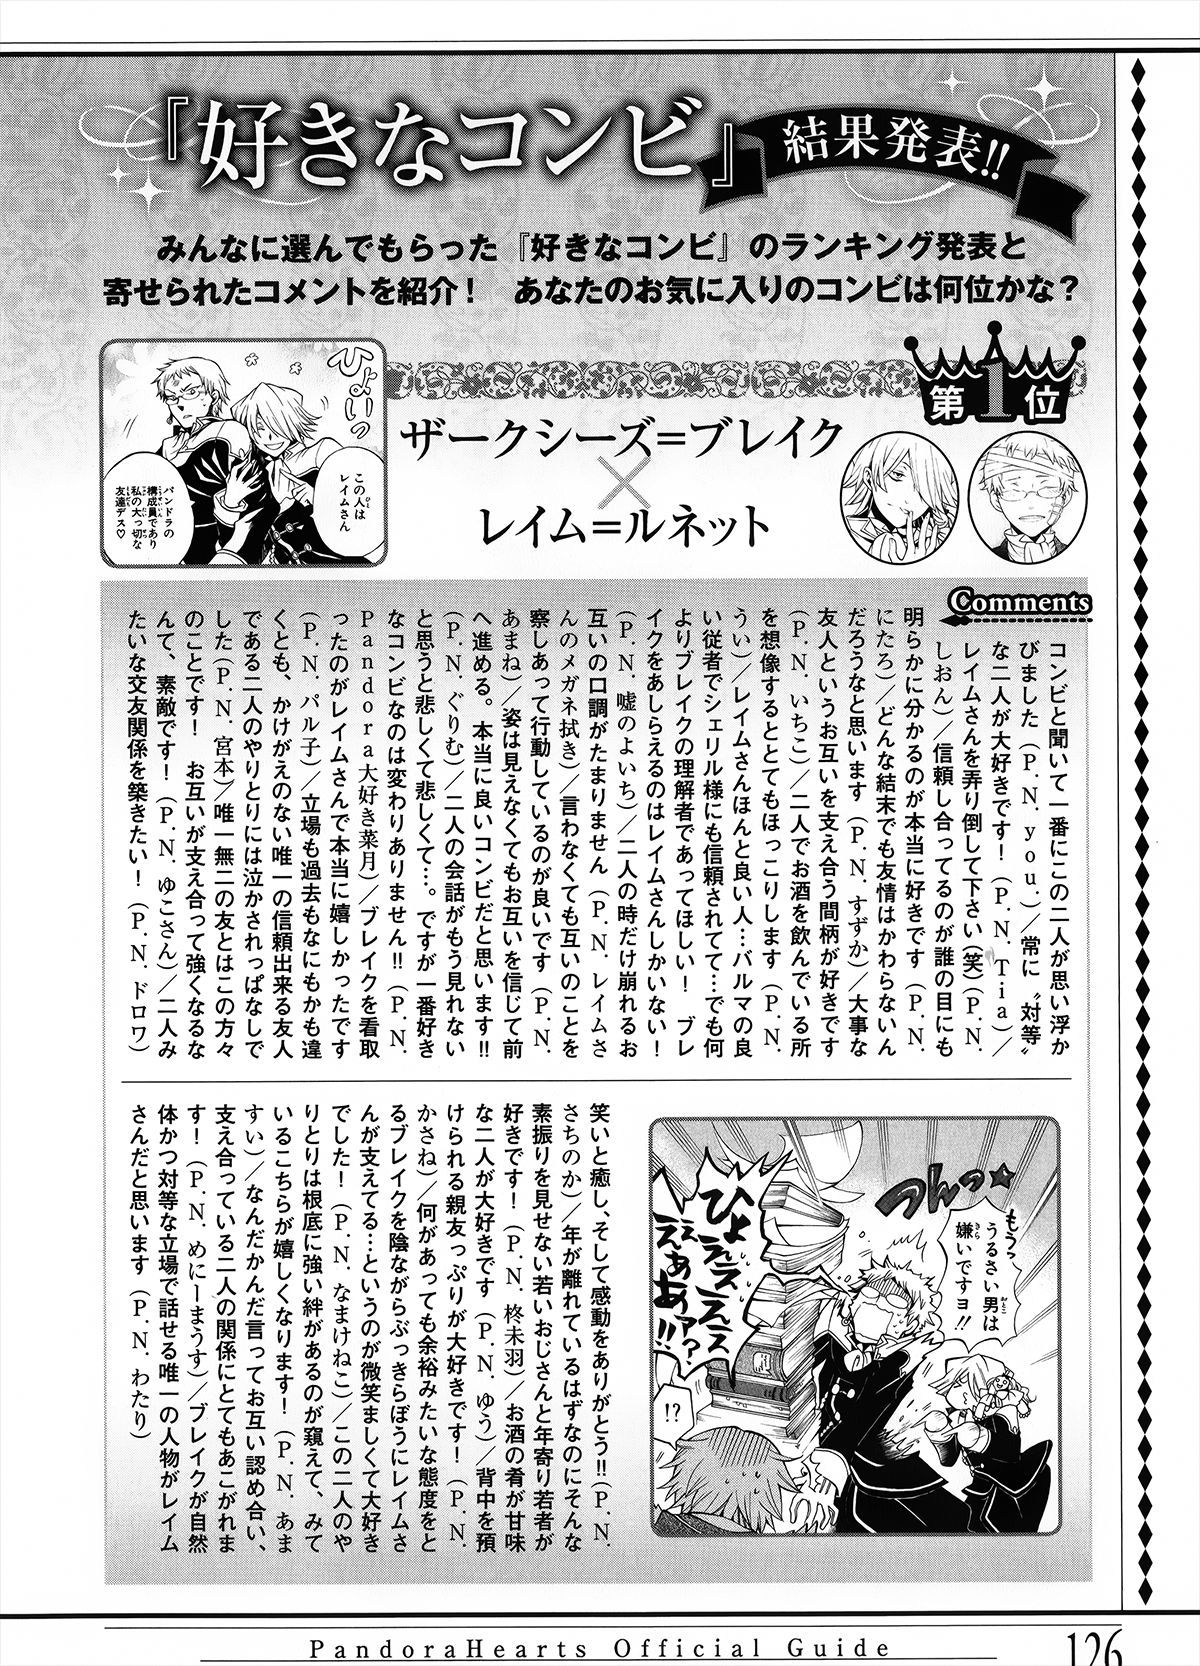 Pandora Hearts Guidebook 24+1: Last Dance パンドラハーツ オフィシャルガイド 24 + 1 ~Last Dance! 130